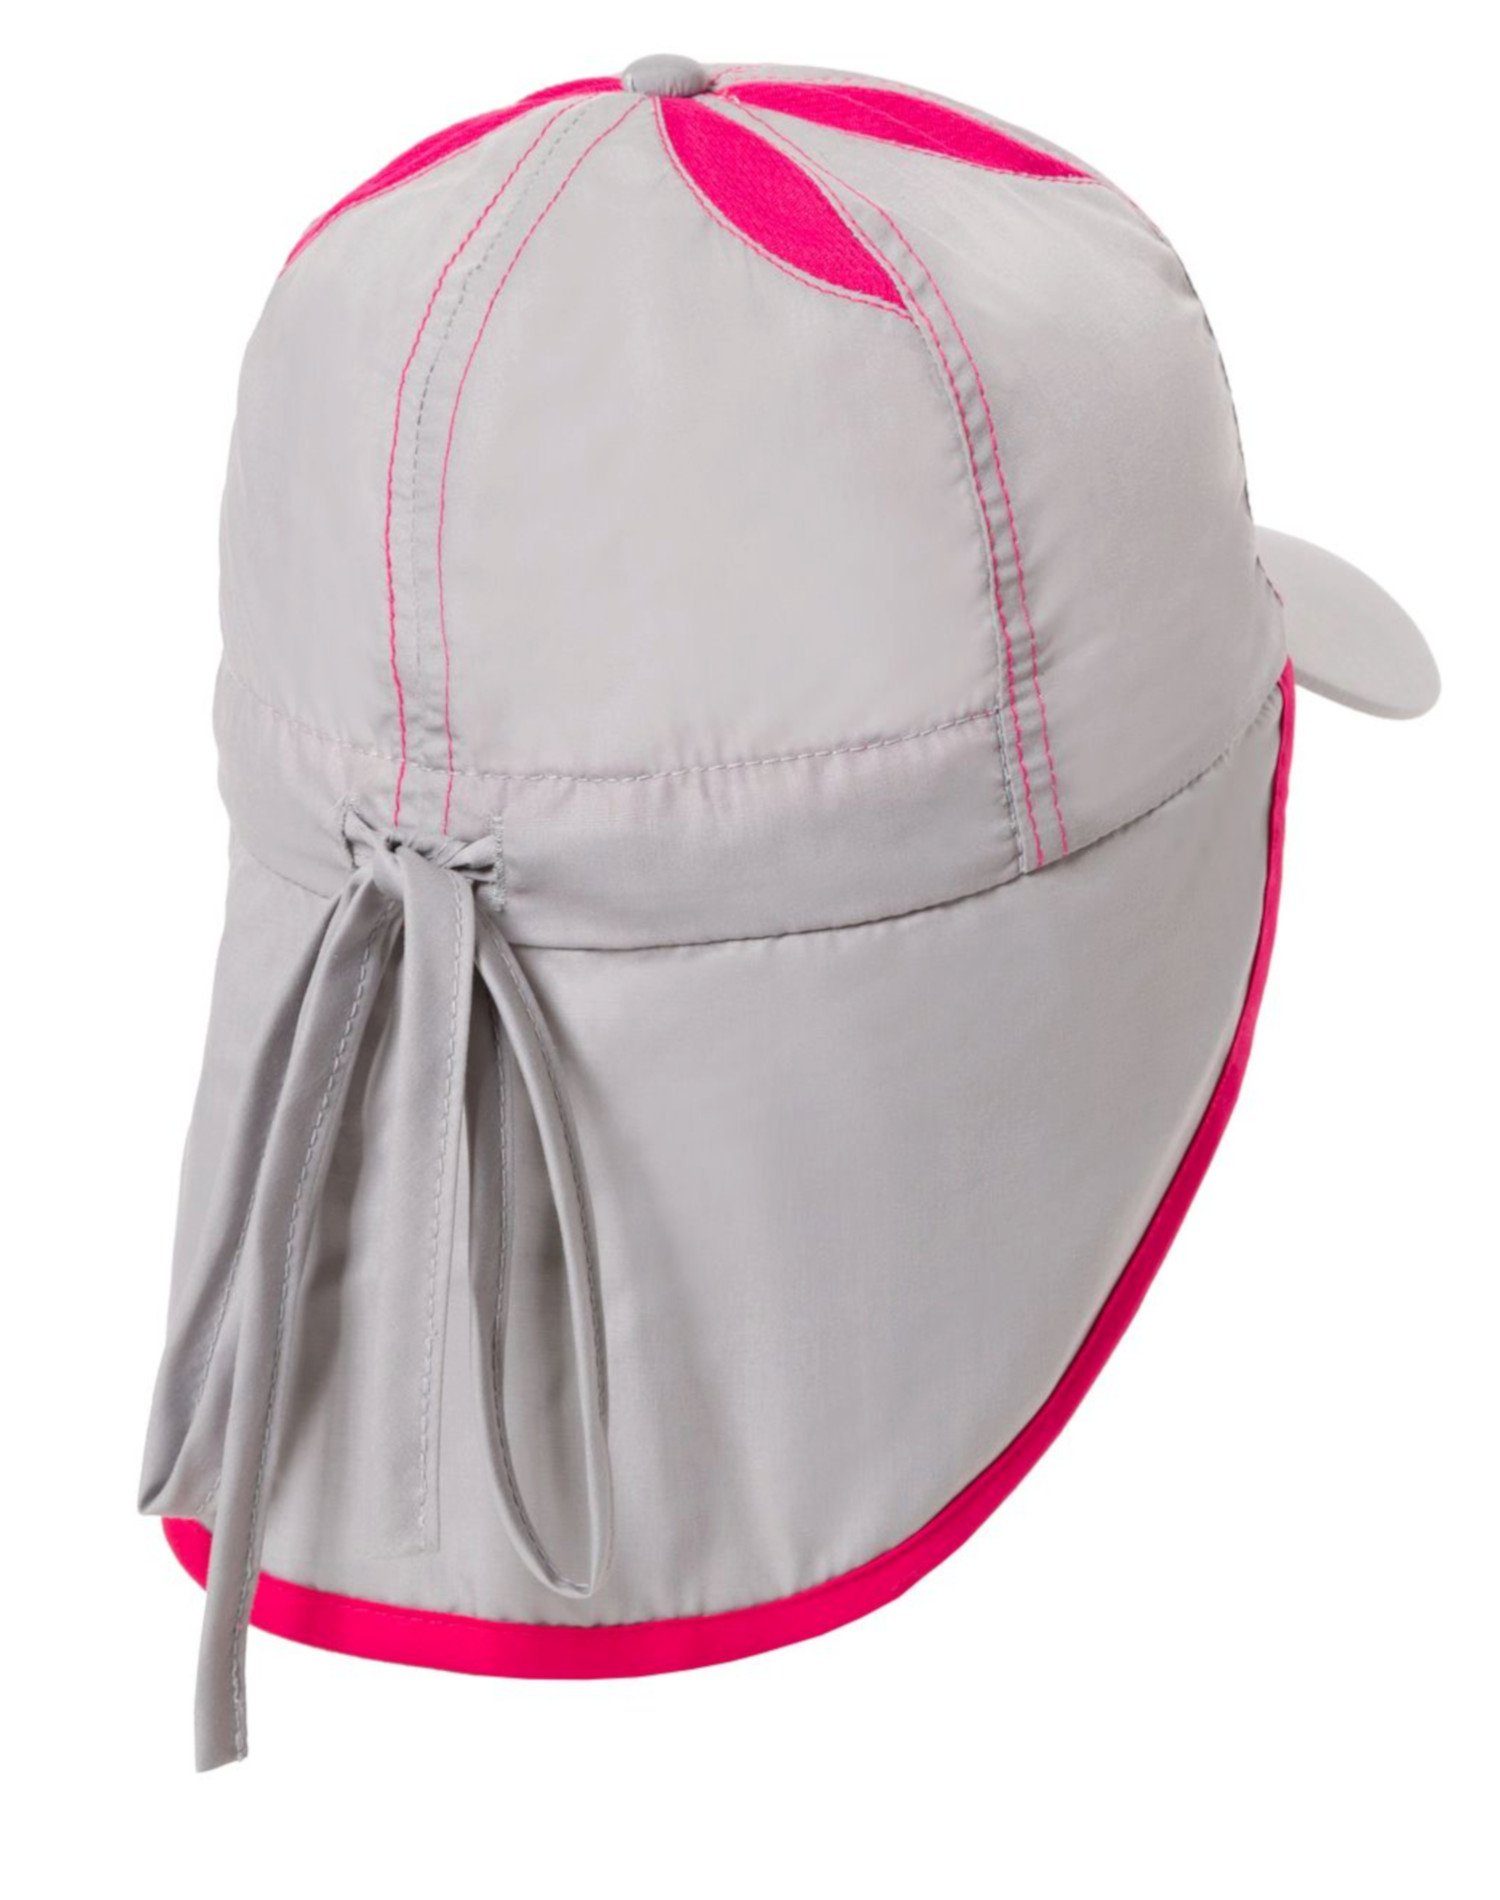 Schirmmütze Sommerhut, mit Hellgrau-Pink Sonnenhut, Hilltop Kindermütze, Nackenschutz Schirmmütze